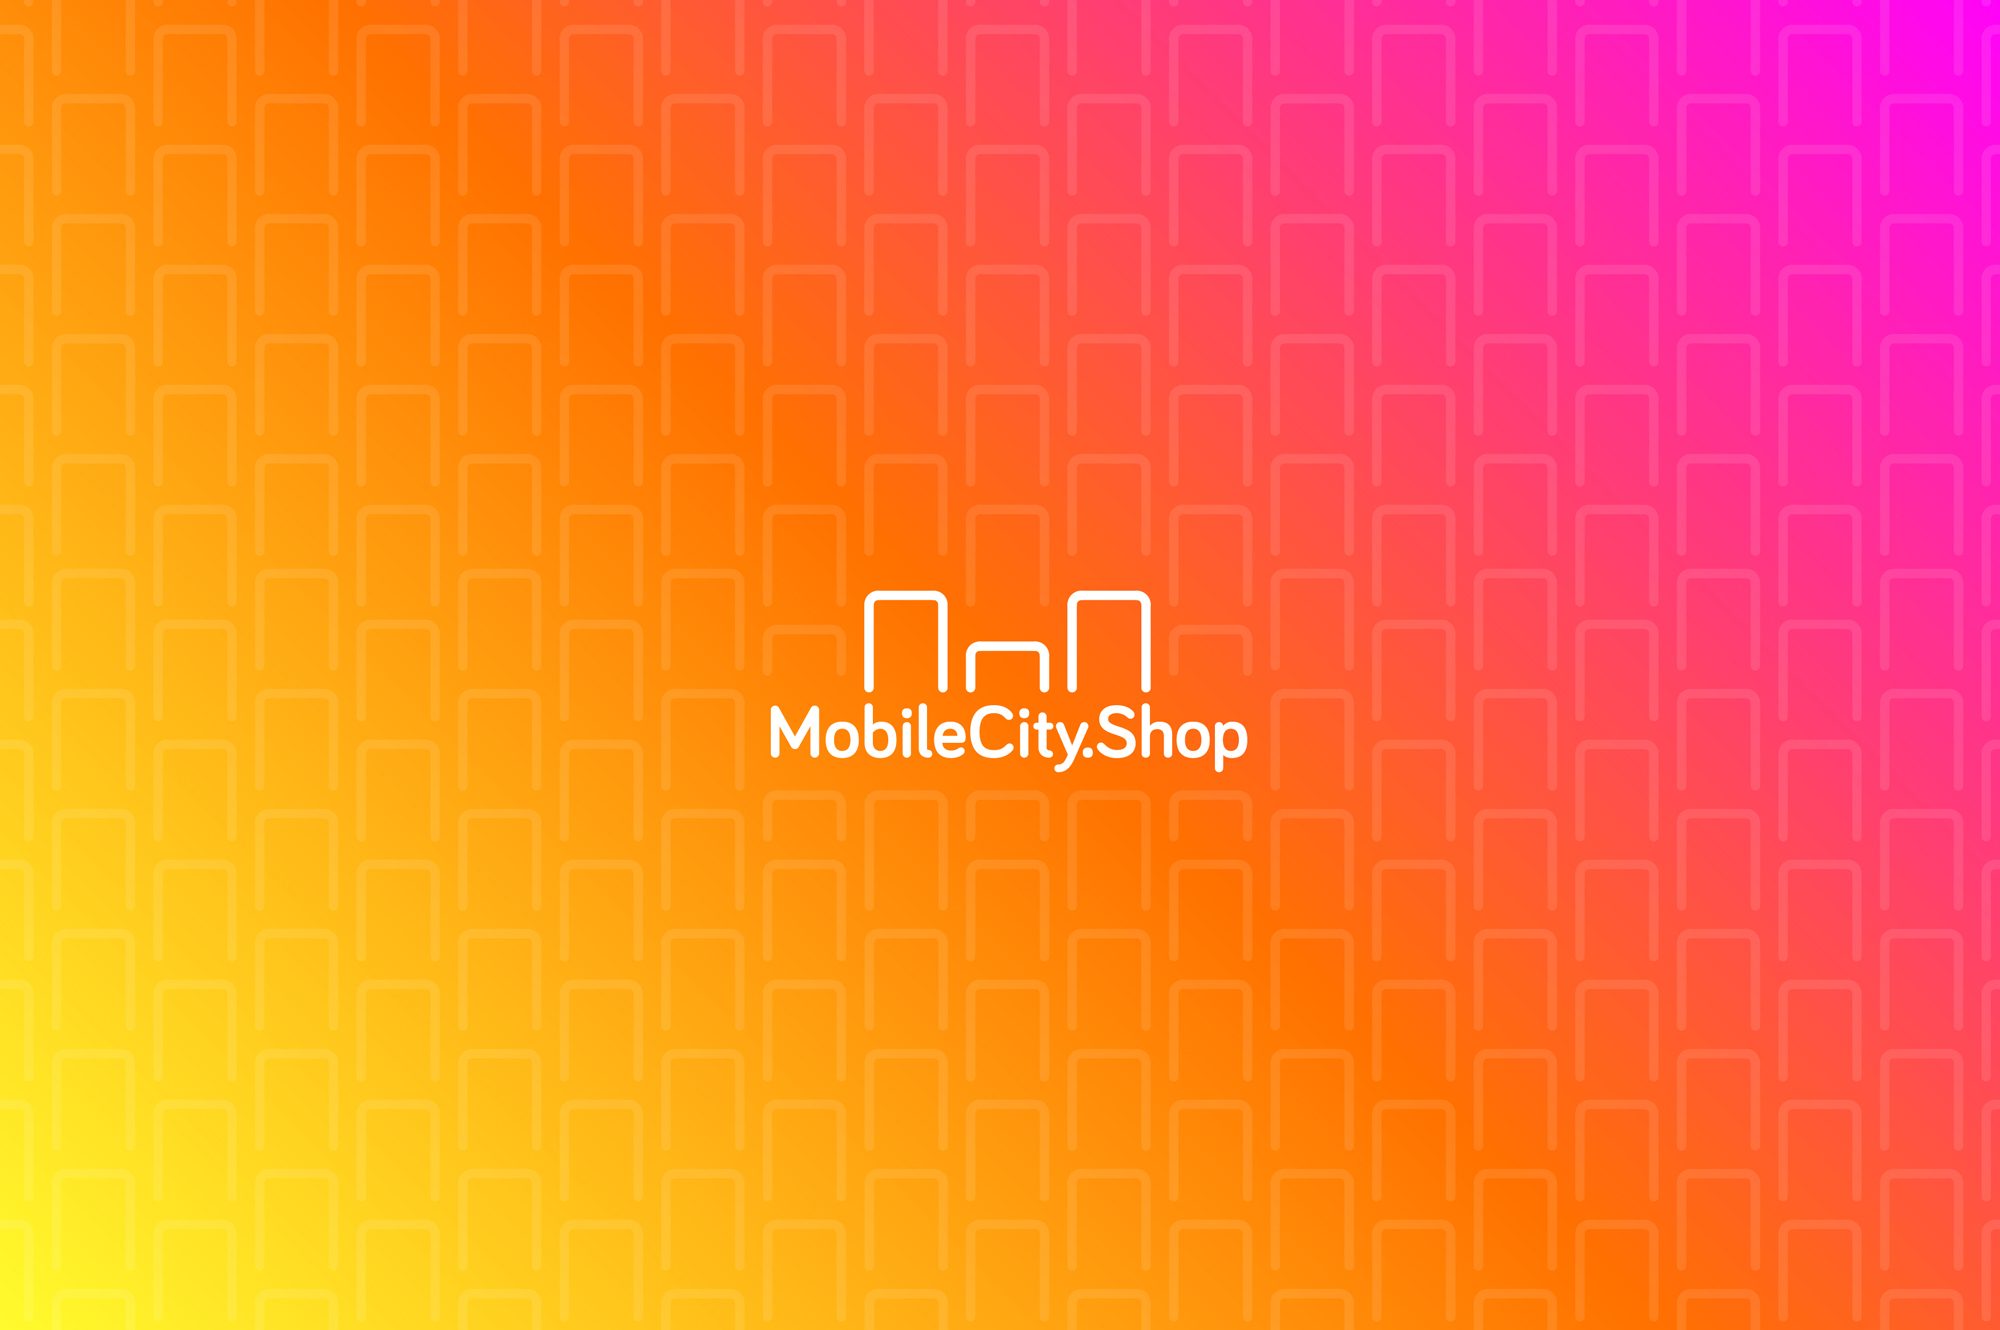 MobileCity.Shop - logo a KOLOR pattern2